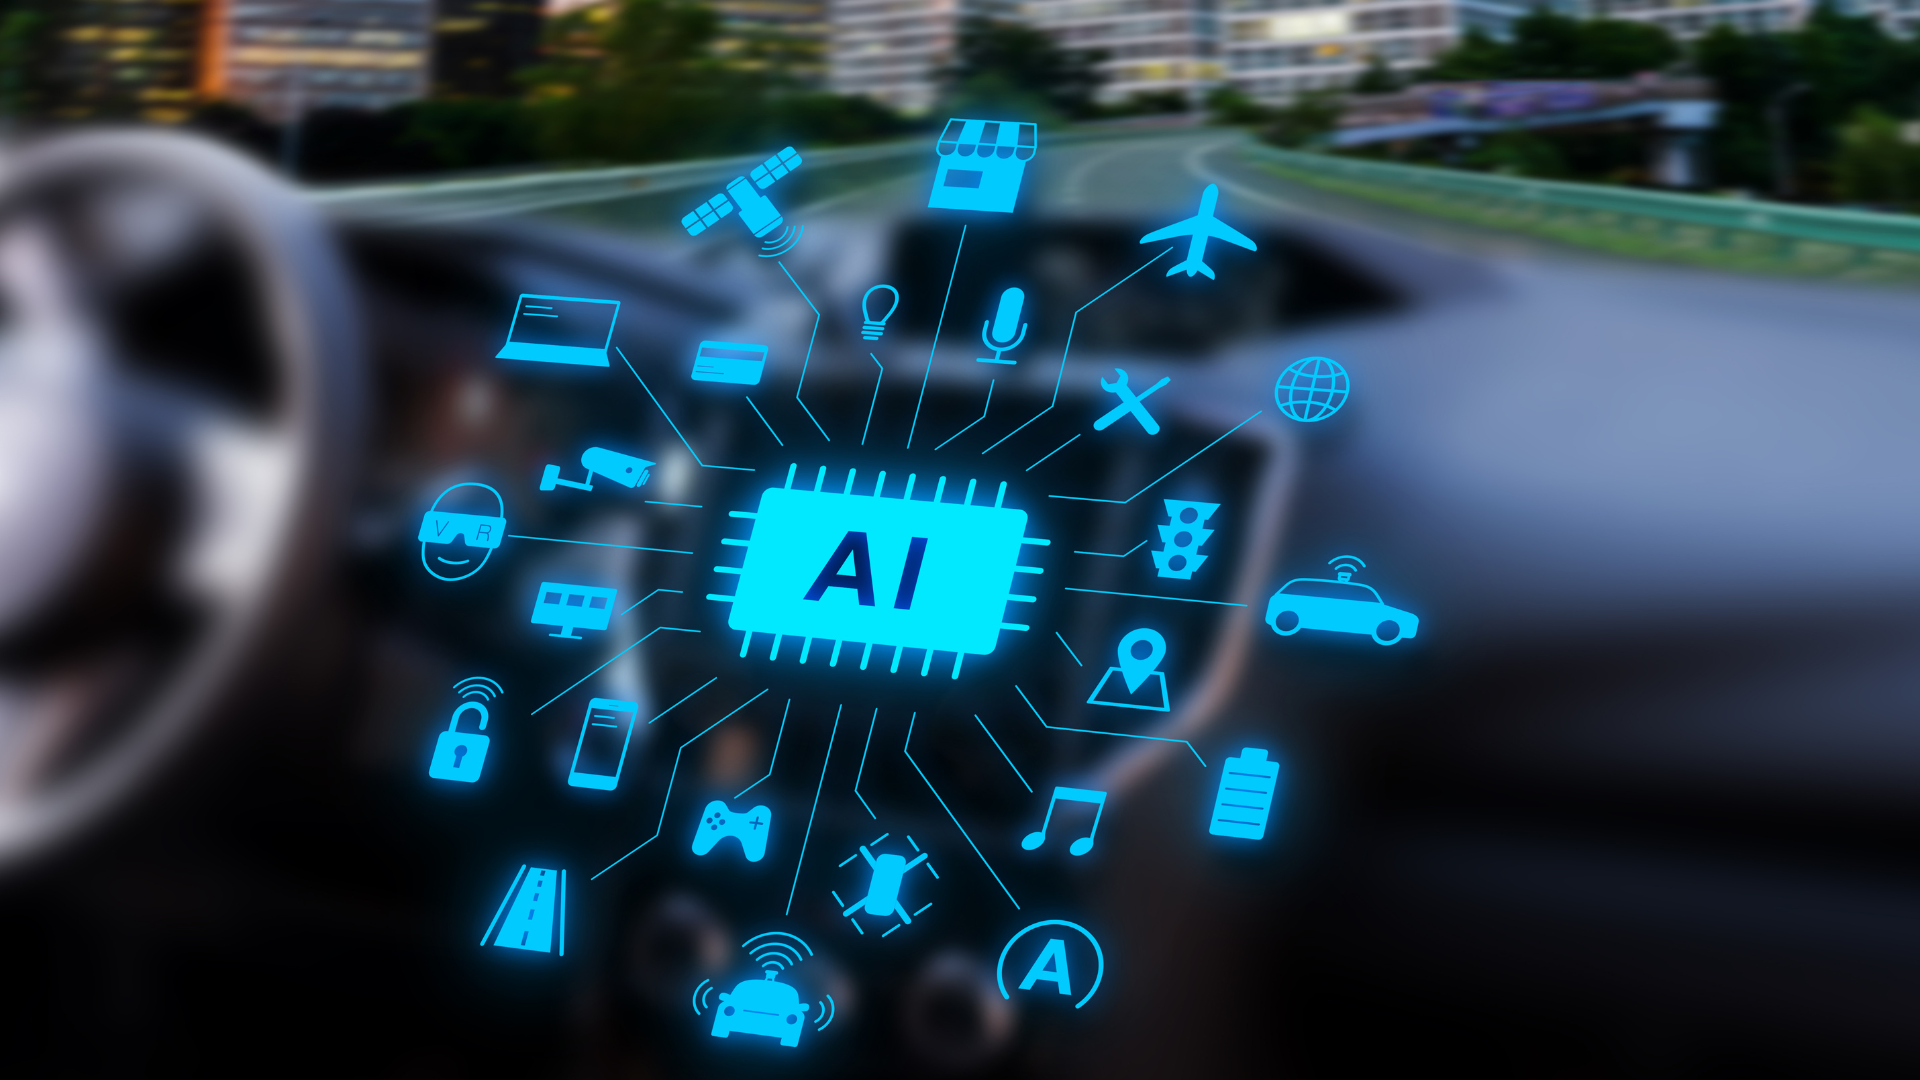 Painel de carro exibindo diversas opções de aplicativos de inteligência artificial